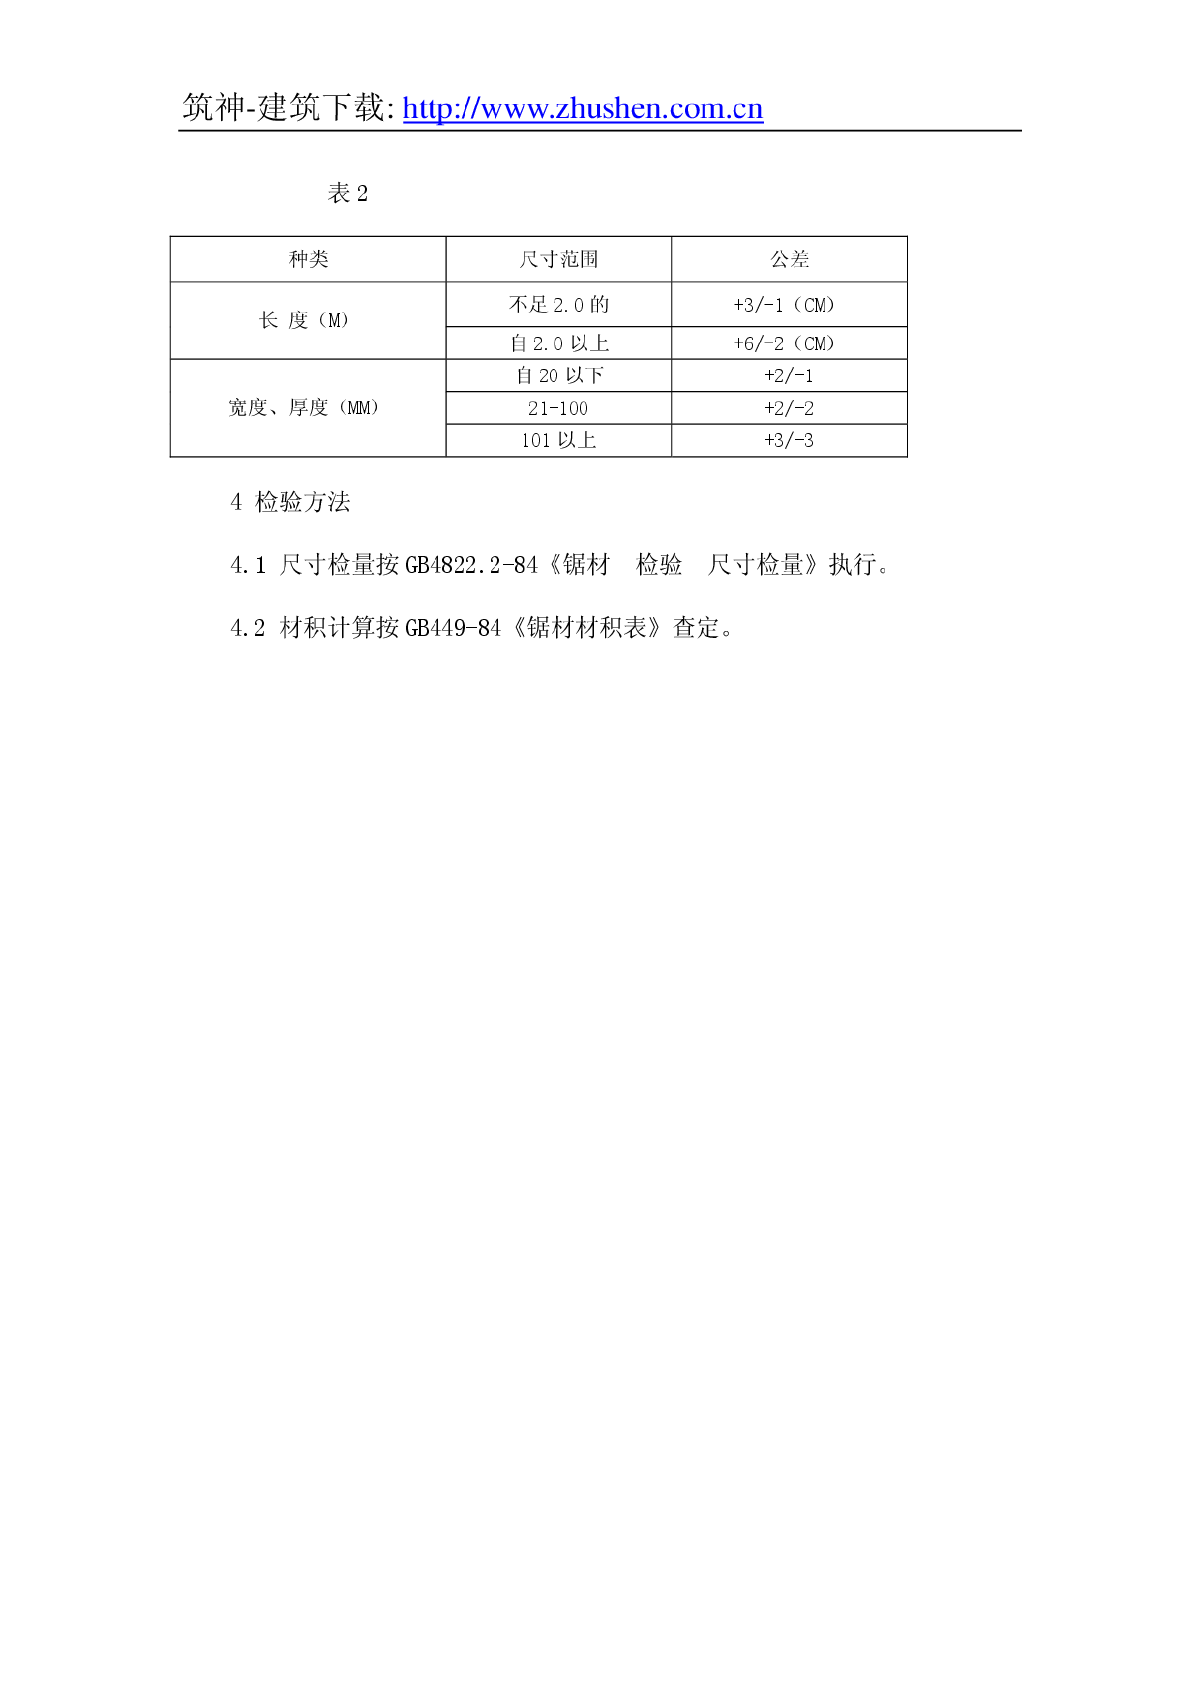 GB153.1-84针叶树锯材.pdf-图二